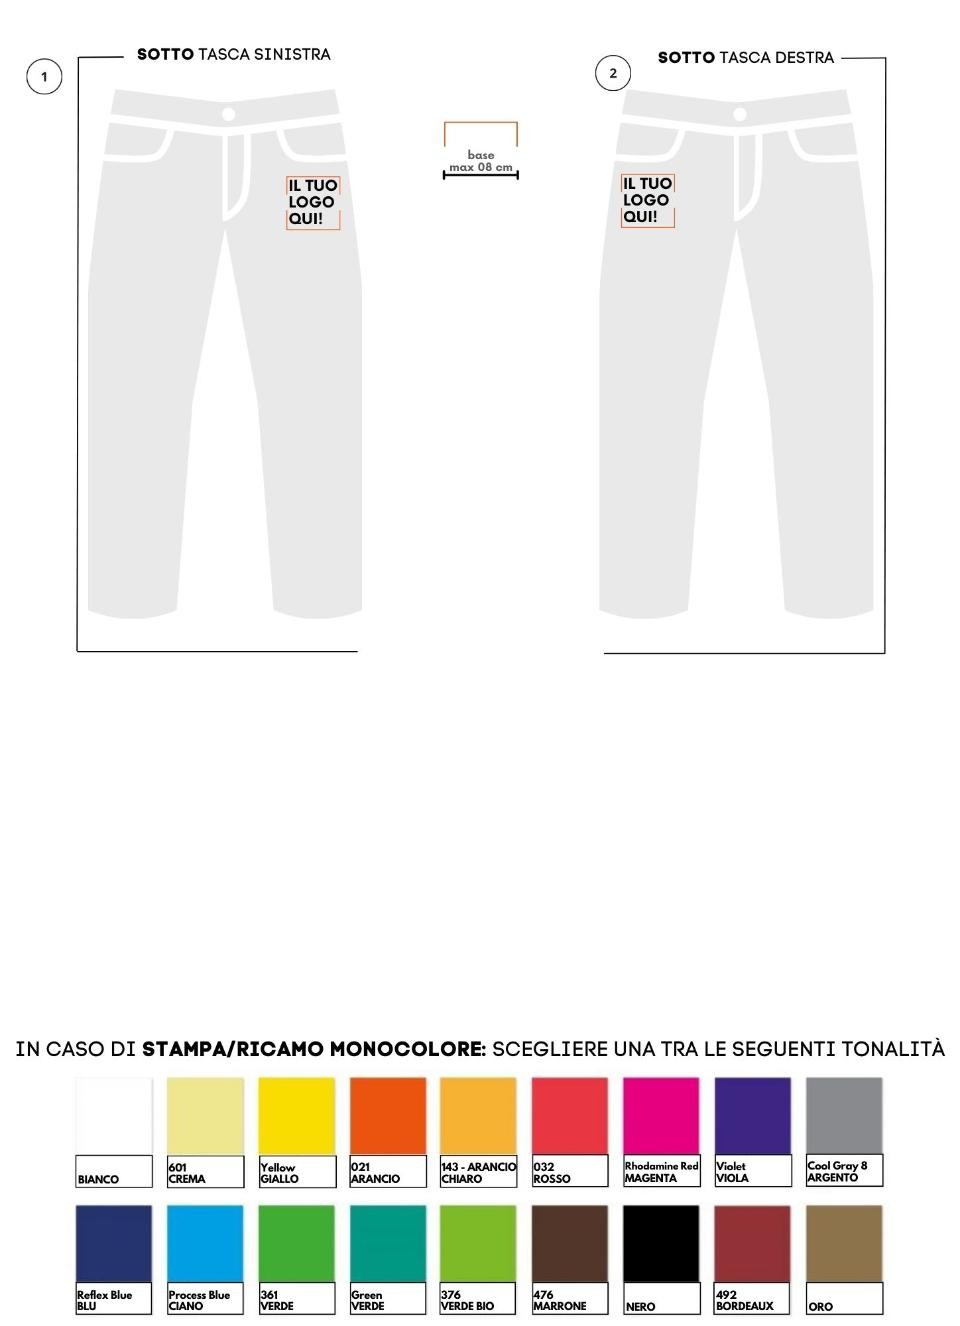 Pantaloni sanitari con tasche classiche (colori caldi)